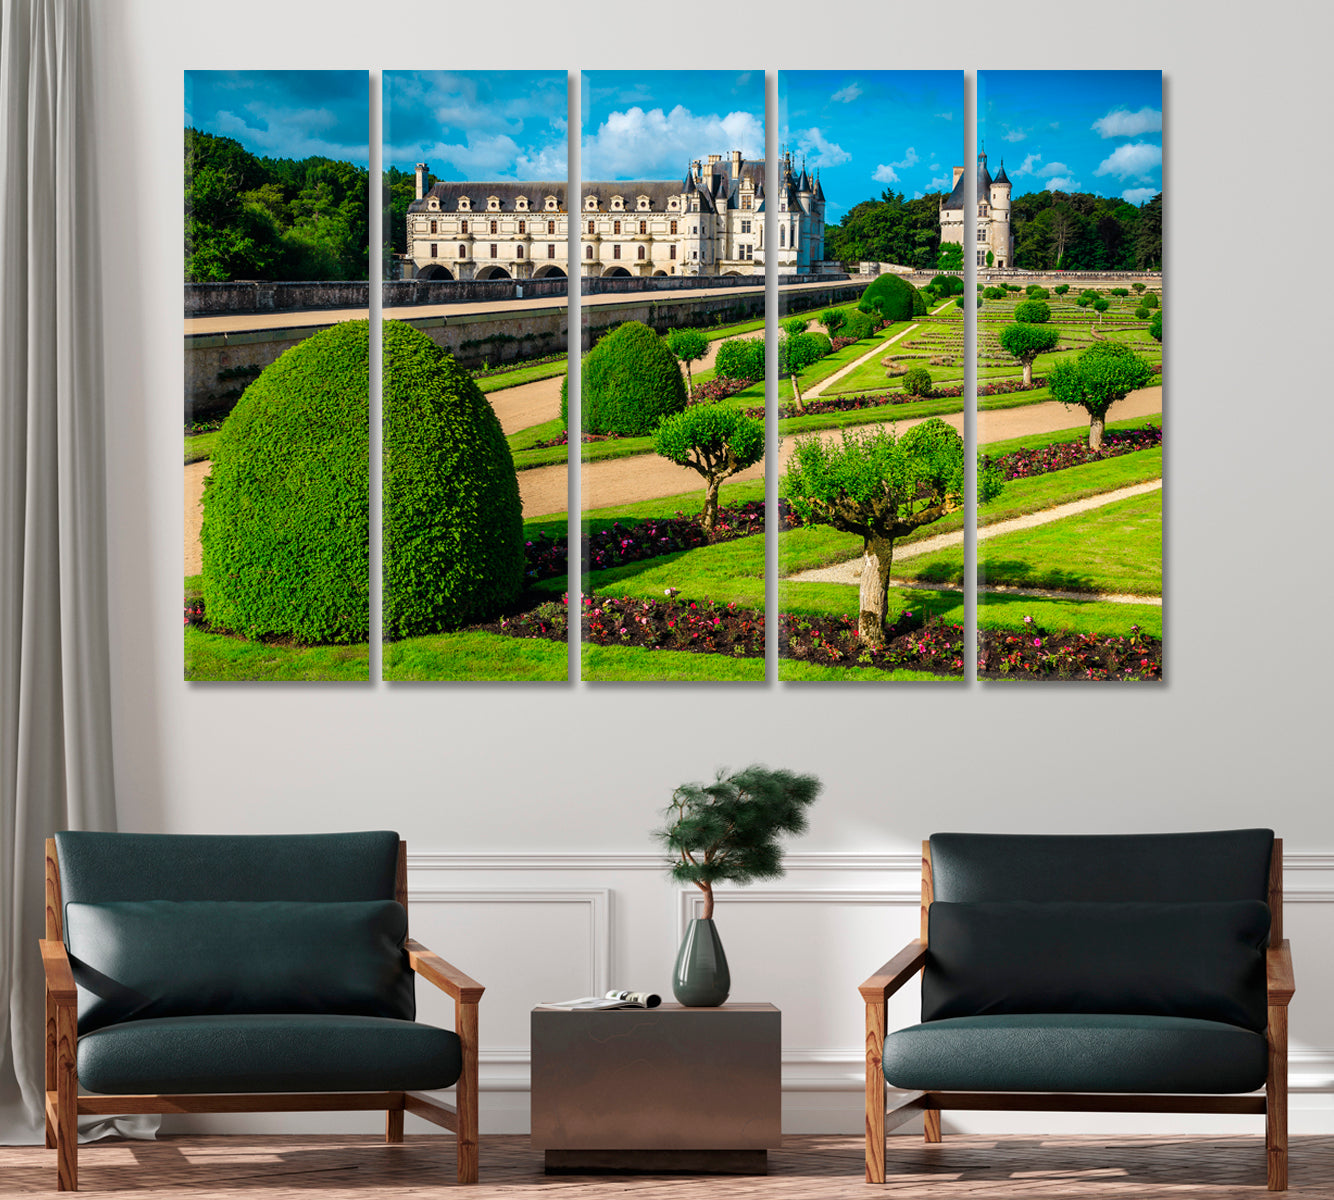 Chenonceau Castle Loire Valley France Canvas Print-Canvas Print-CetArt-1 Panel-24x16 inches-CetArt